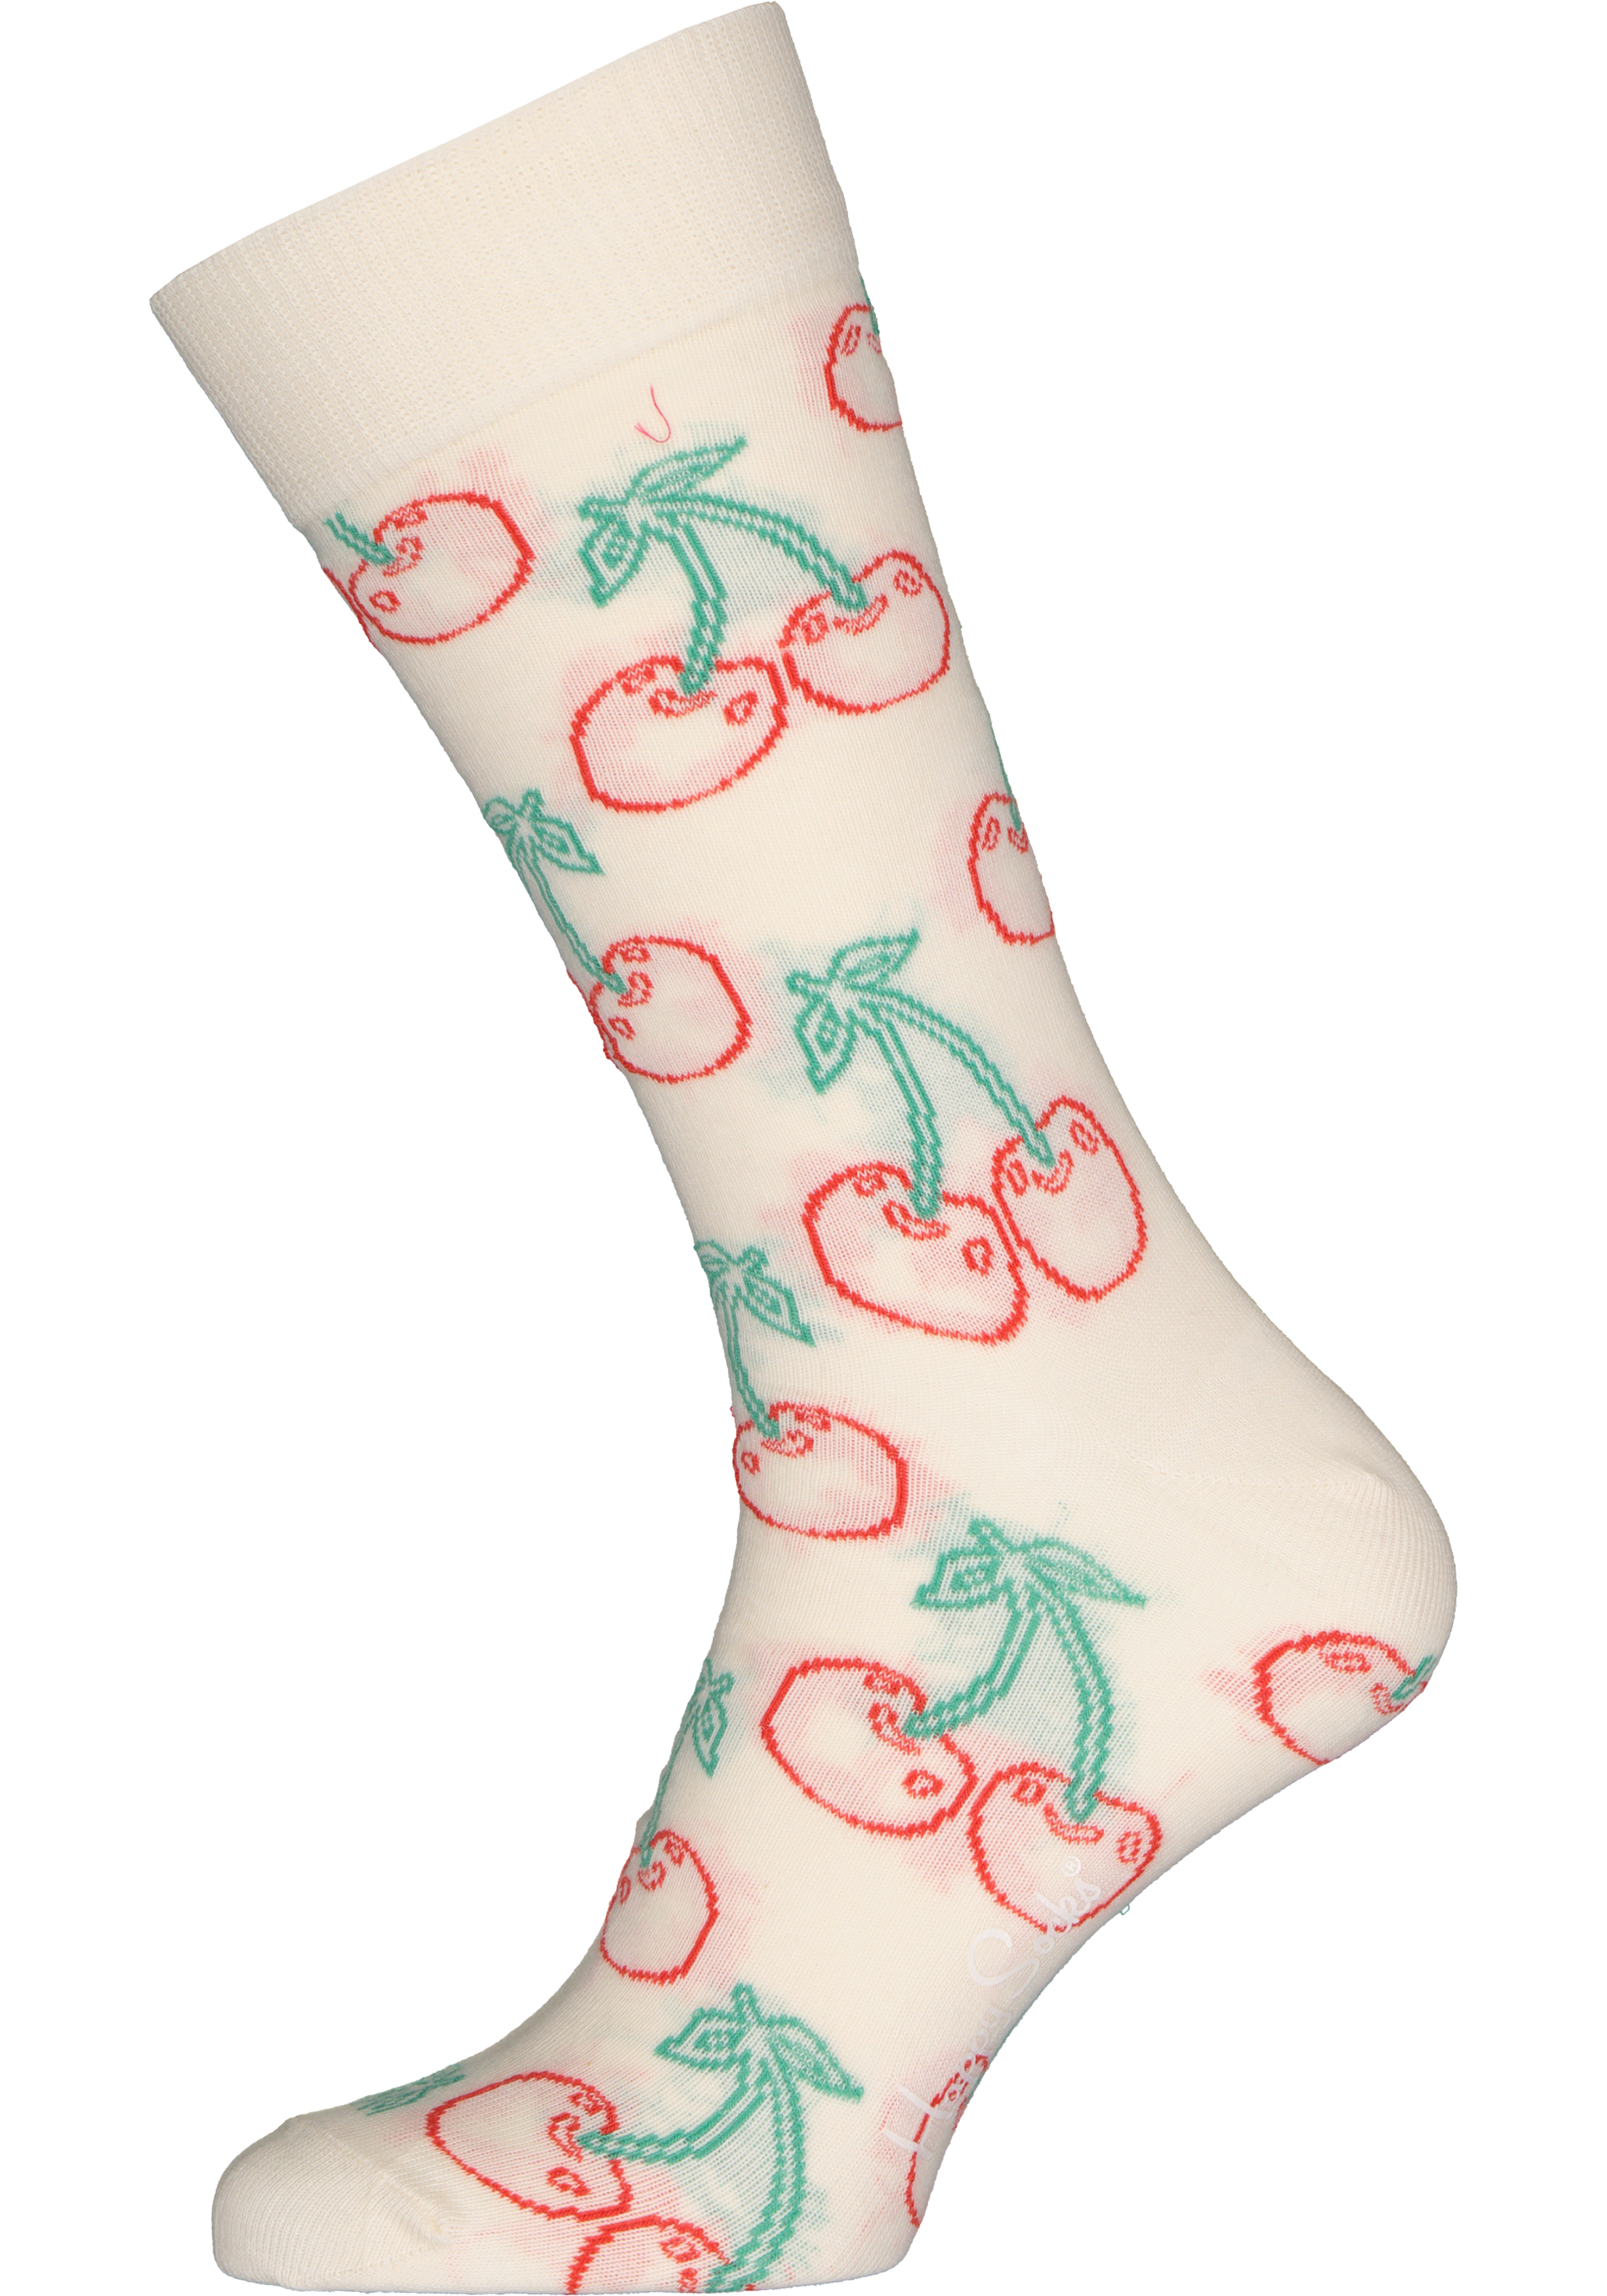 Happy Socks Cherry Sock, wit met rode kersen